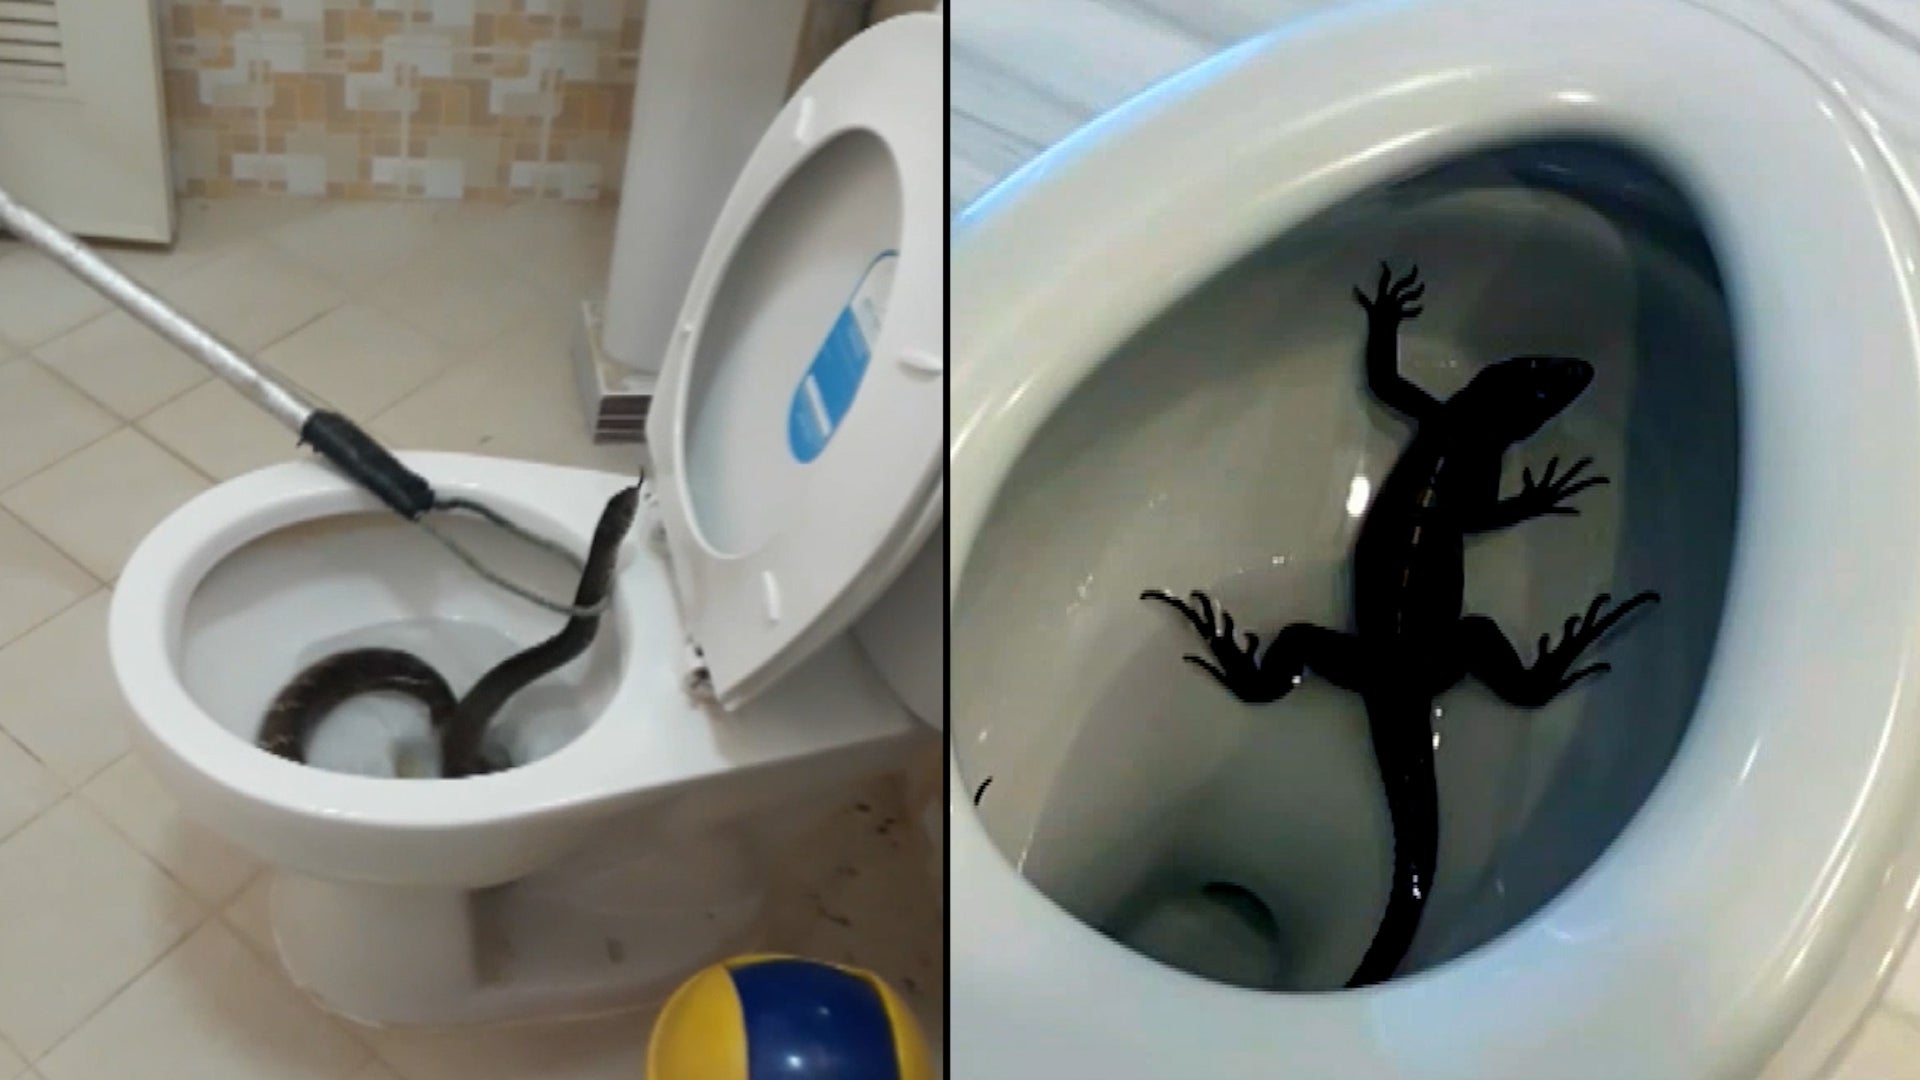 Alabama Police Find Huge 'Harmless' Snake in Toilet